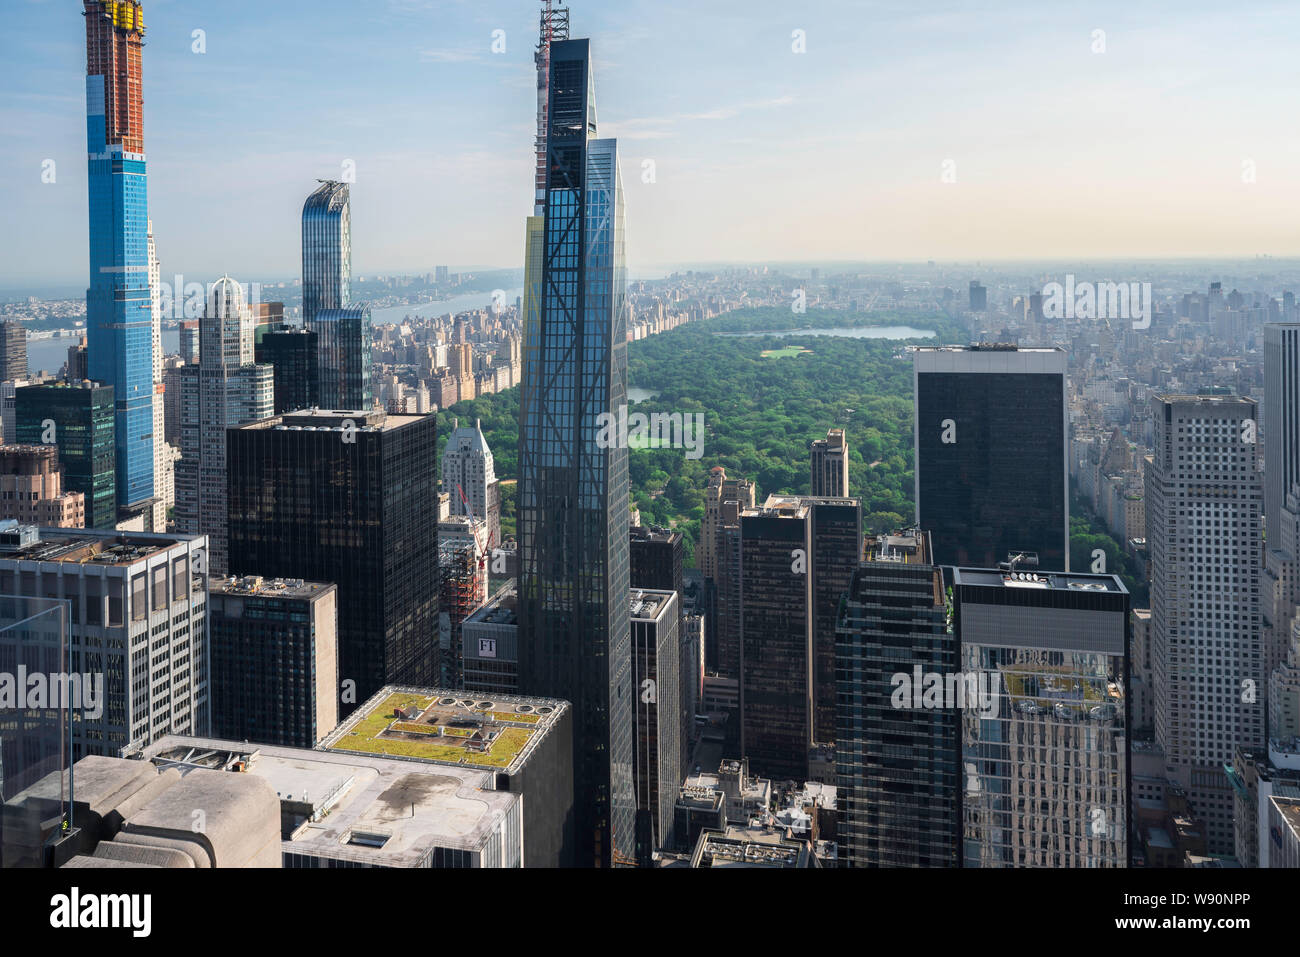 Vista aérea de la ciudad de Manhattan, al norte desde Midtown hasta Central Park (situado entre el Upper East Side y Upper West Side de Manhattan, Nueva York, EE.UU. Foto de stock